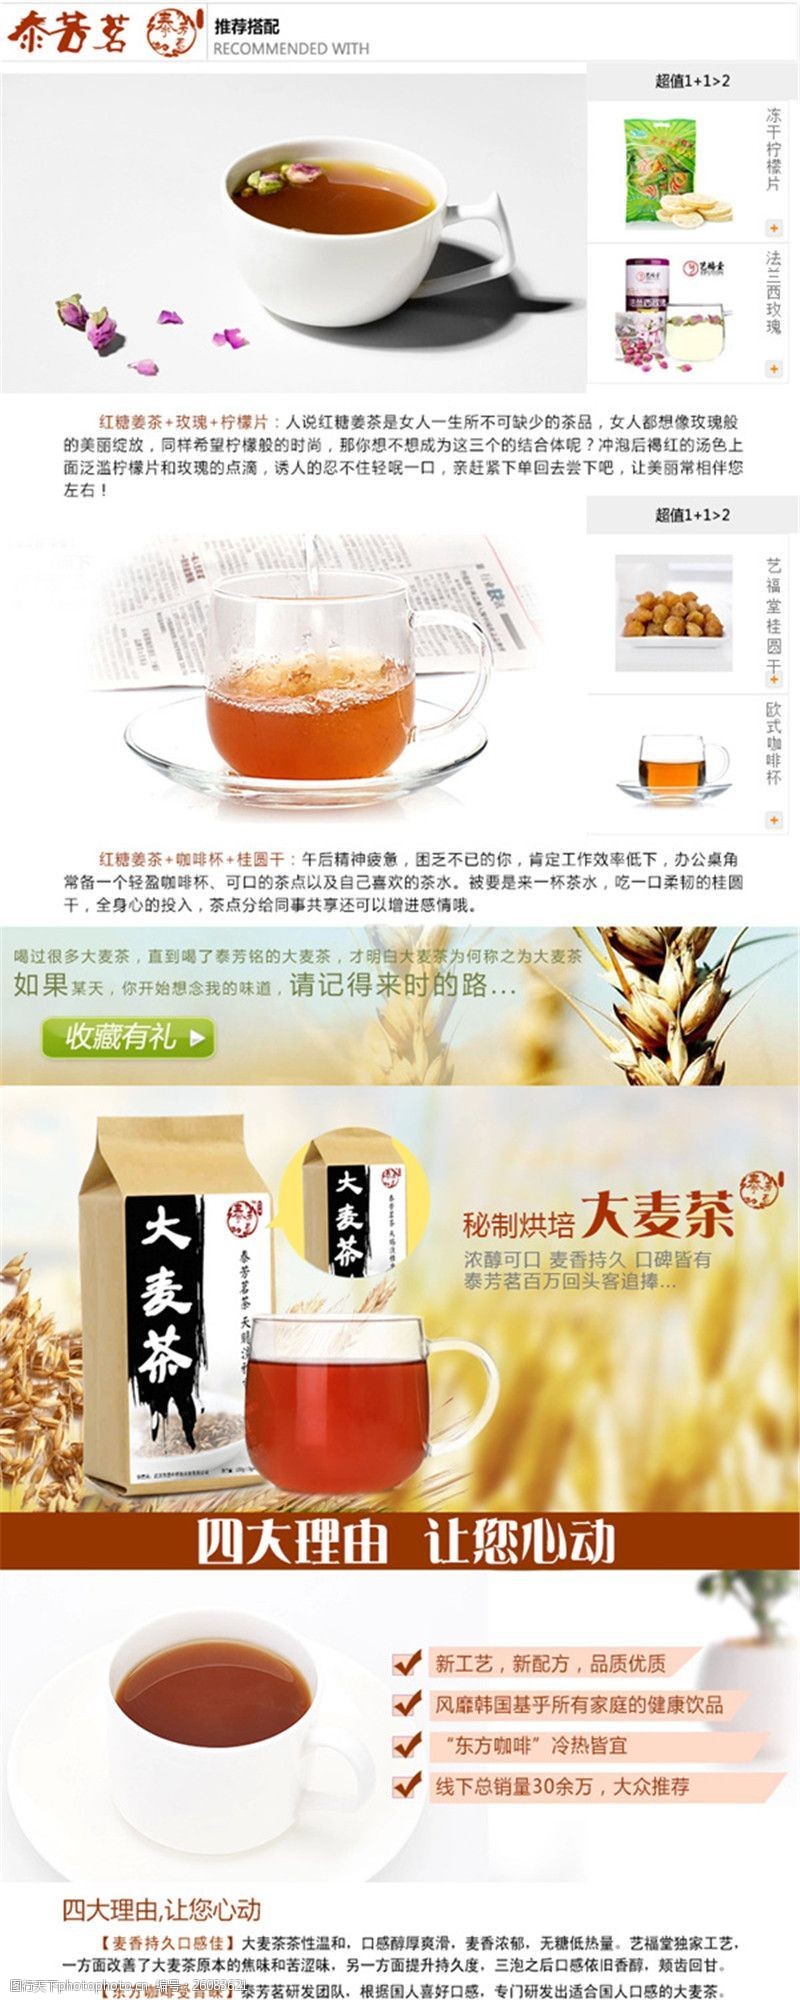 大麦茶健康减肥茶详情页PSD免费下载